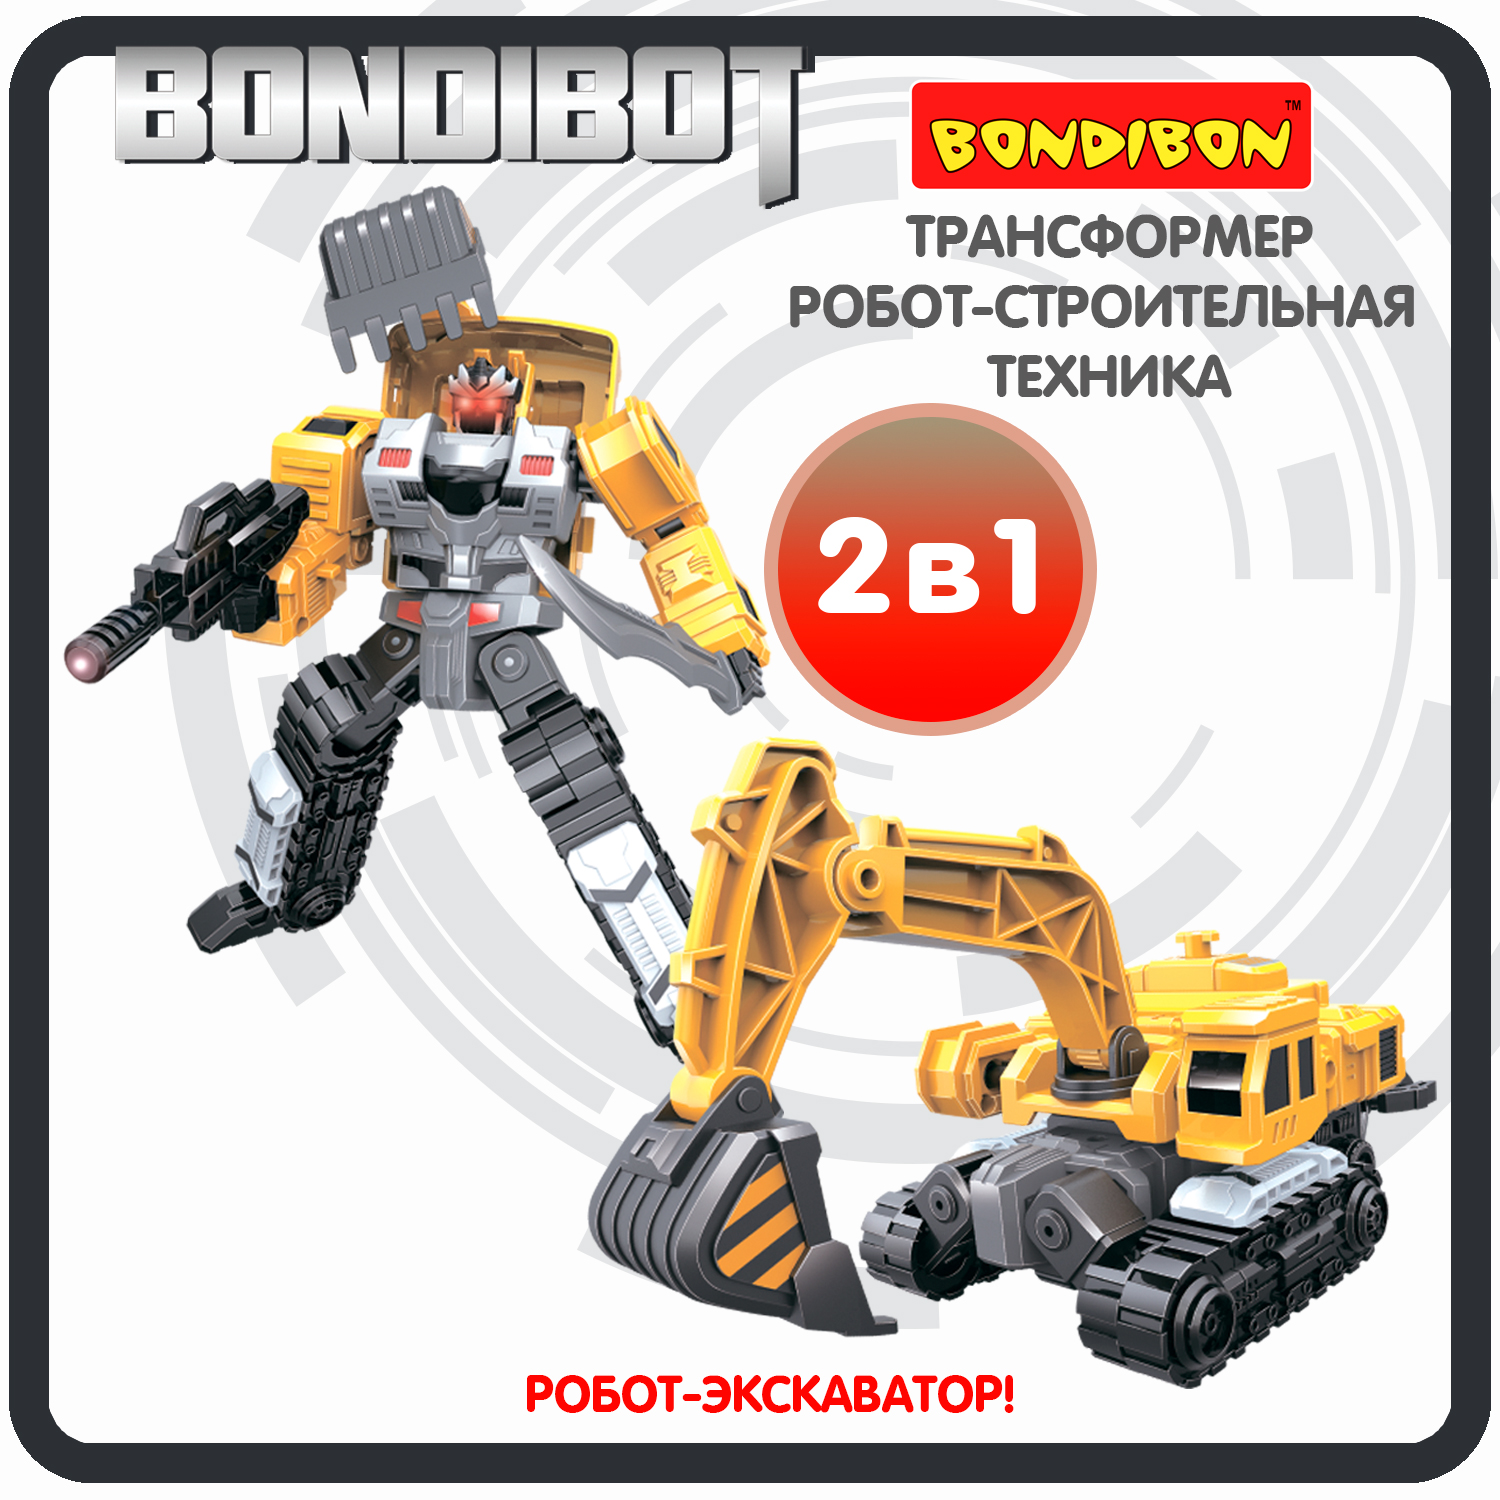 Трансформер робот-строительная техника, 2в1 BONDIBOT Bondibon, экскаватор / ВВ6048 bondibon трансформер bondibot робот экскаватор c ковшом 2 в 1